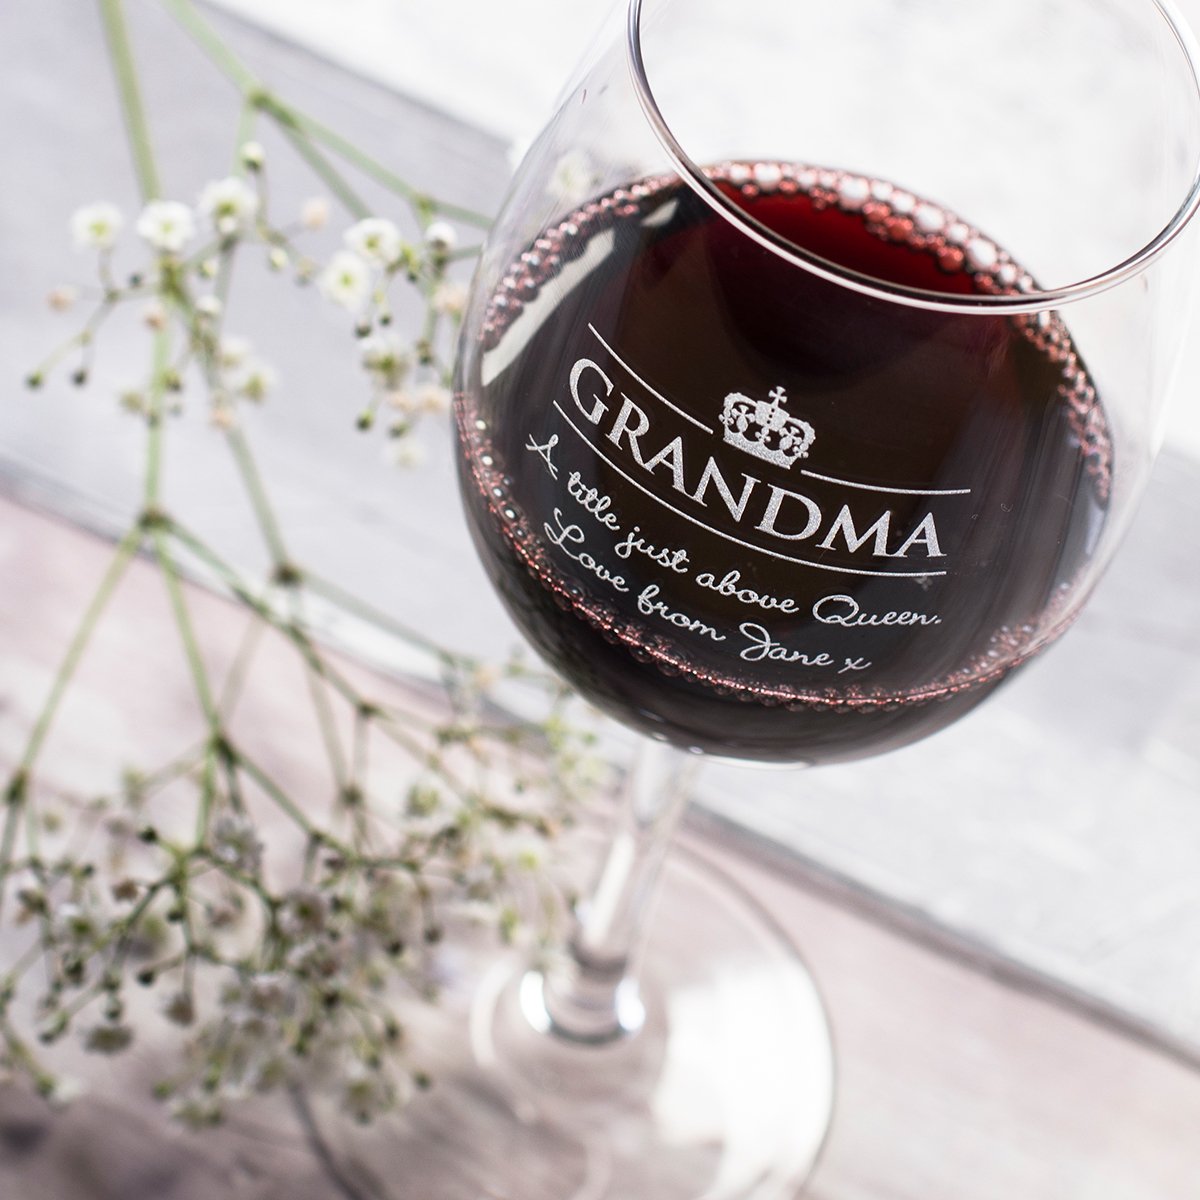 Personalised Wine Glass - Grandma Crown